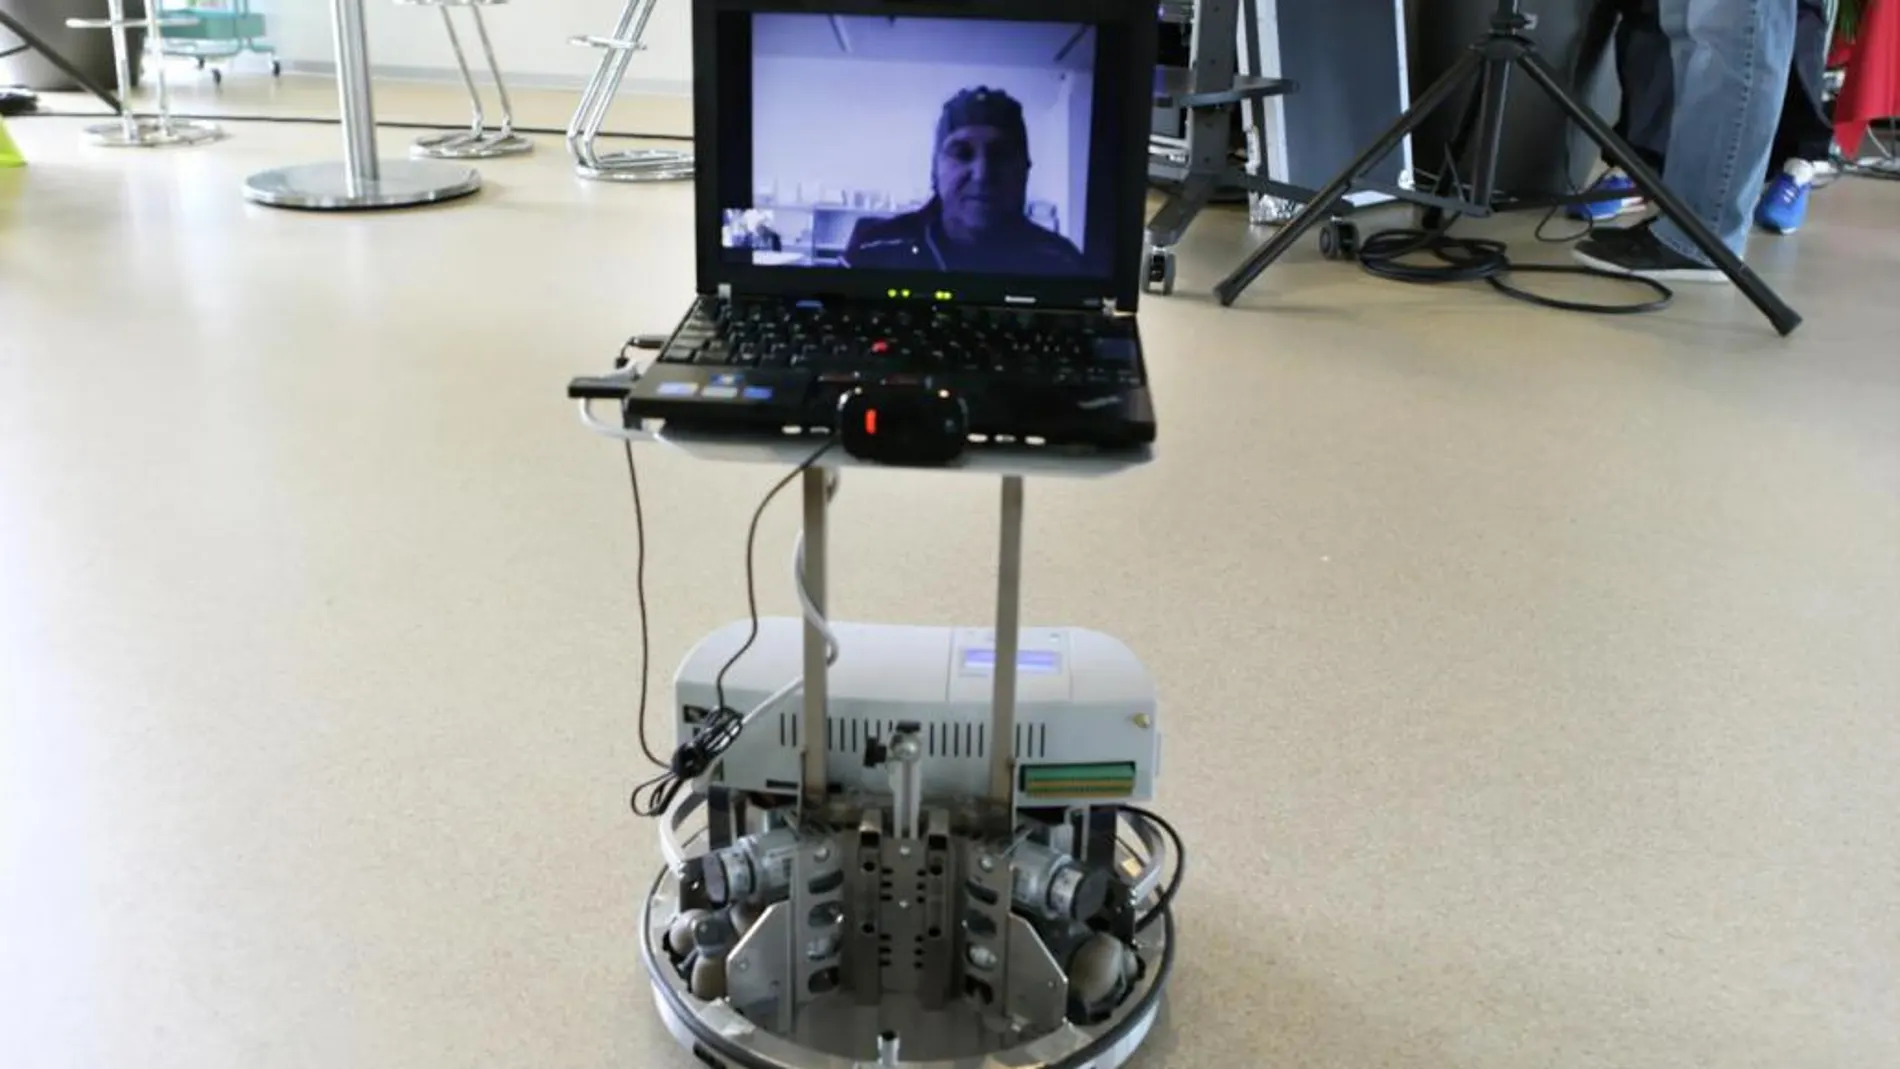 Desde su cama de hospital, un paciente discapacitado es capaz de controlar un robot a distancia y de interactuar con la gente que se encuentra a través de Skype